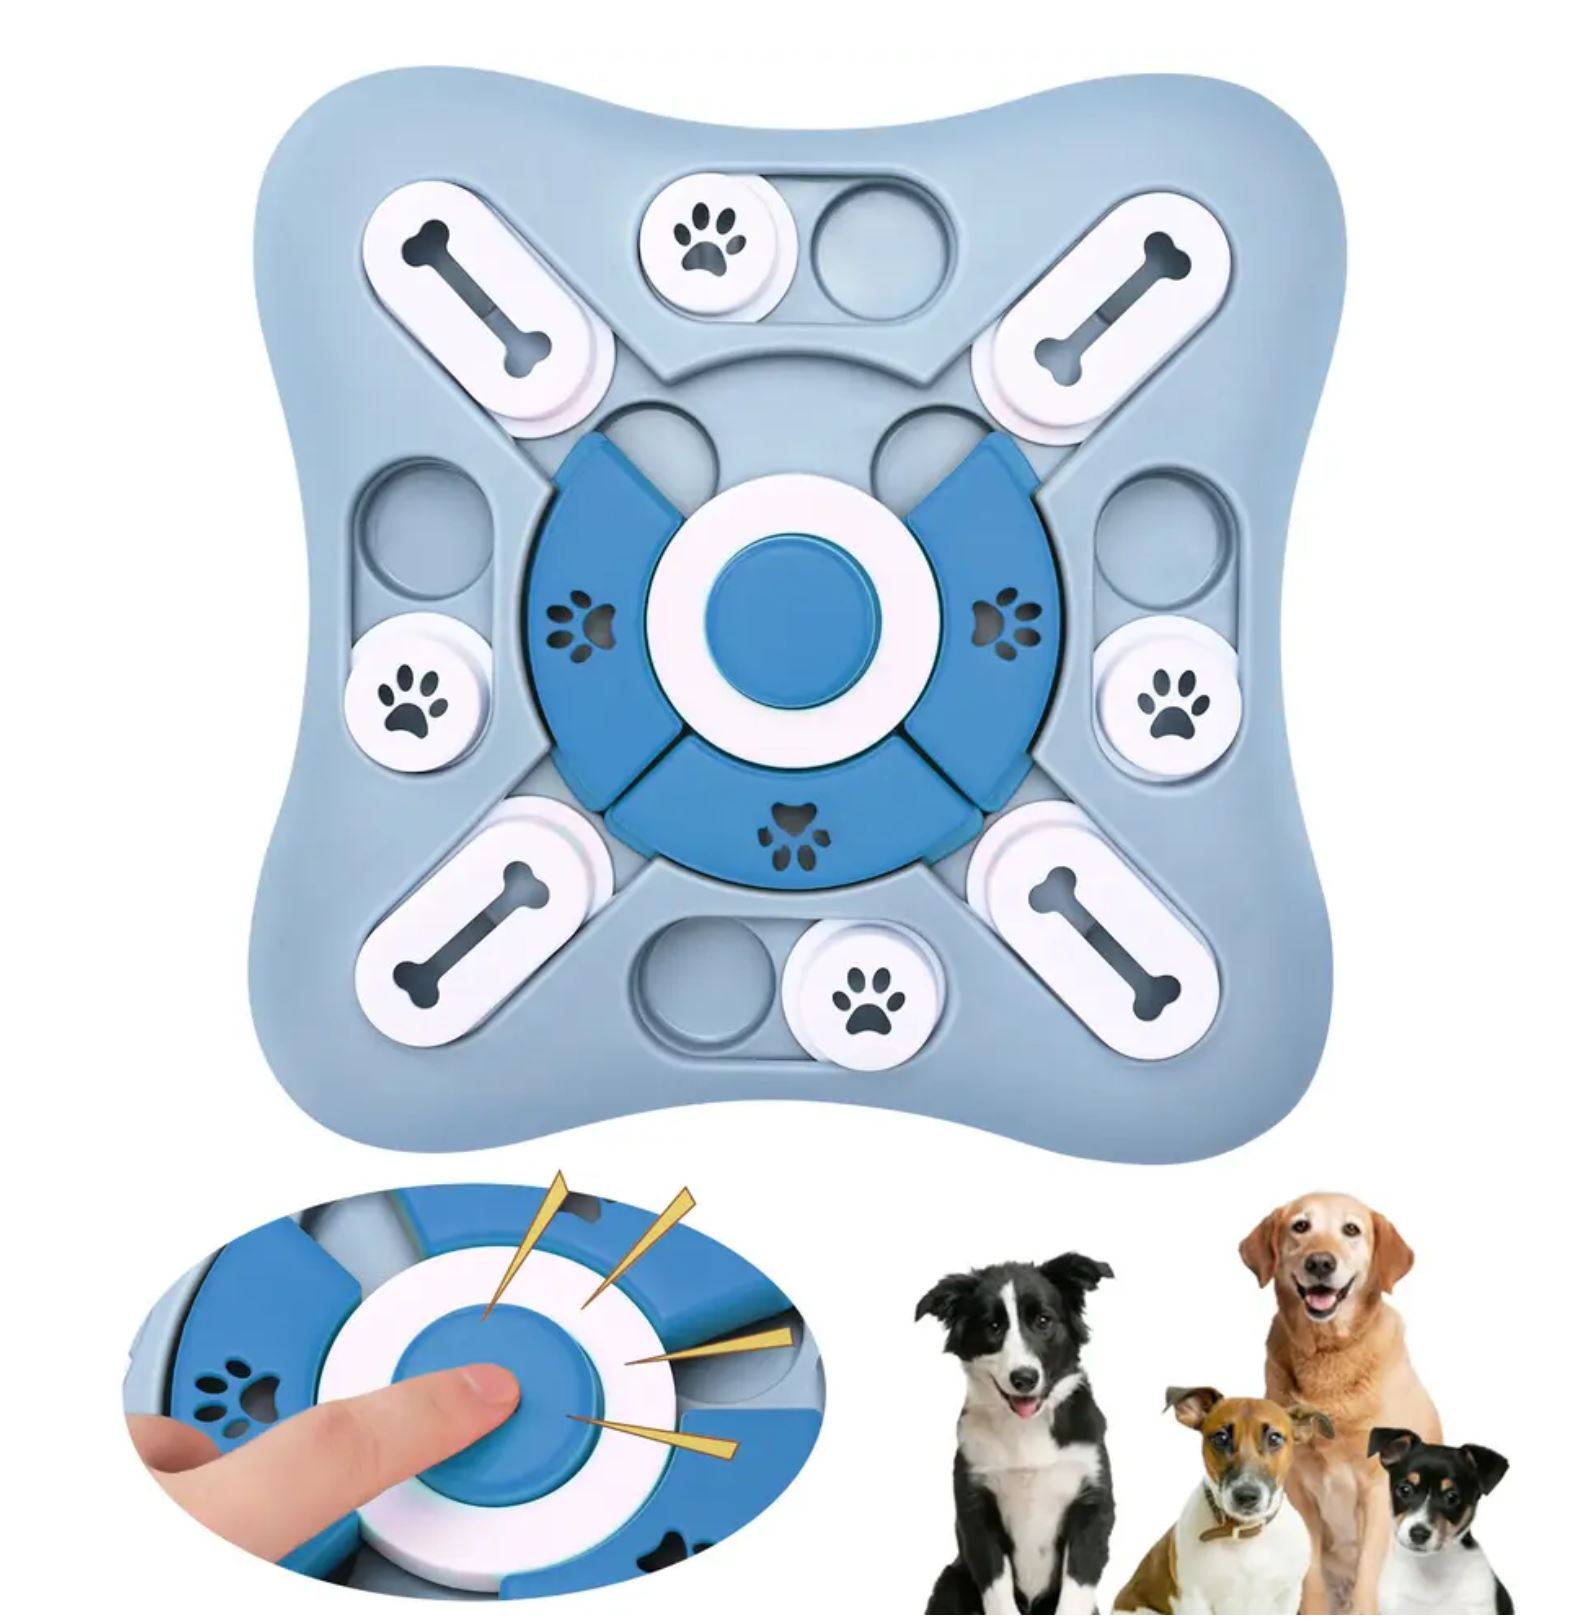 Juegos interactivos para perros: estimulación mental para tu perro